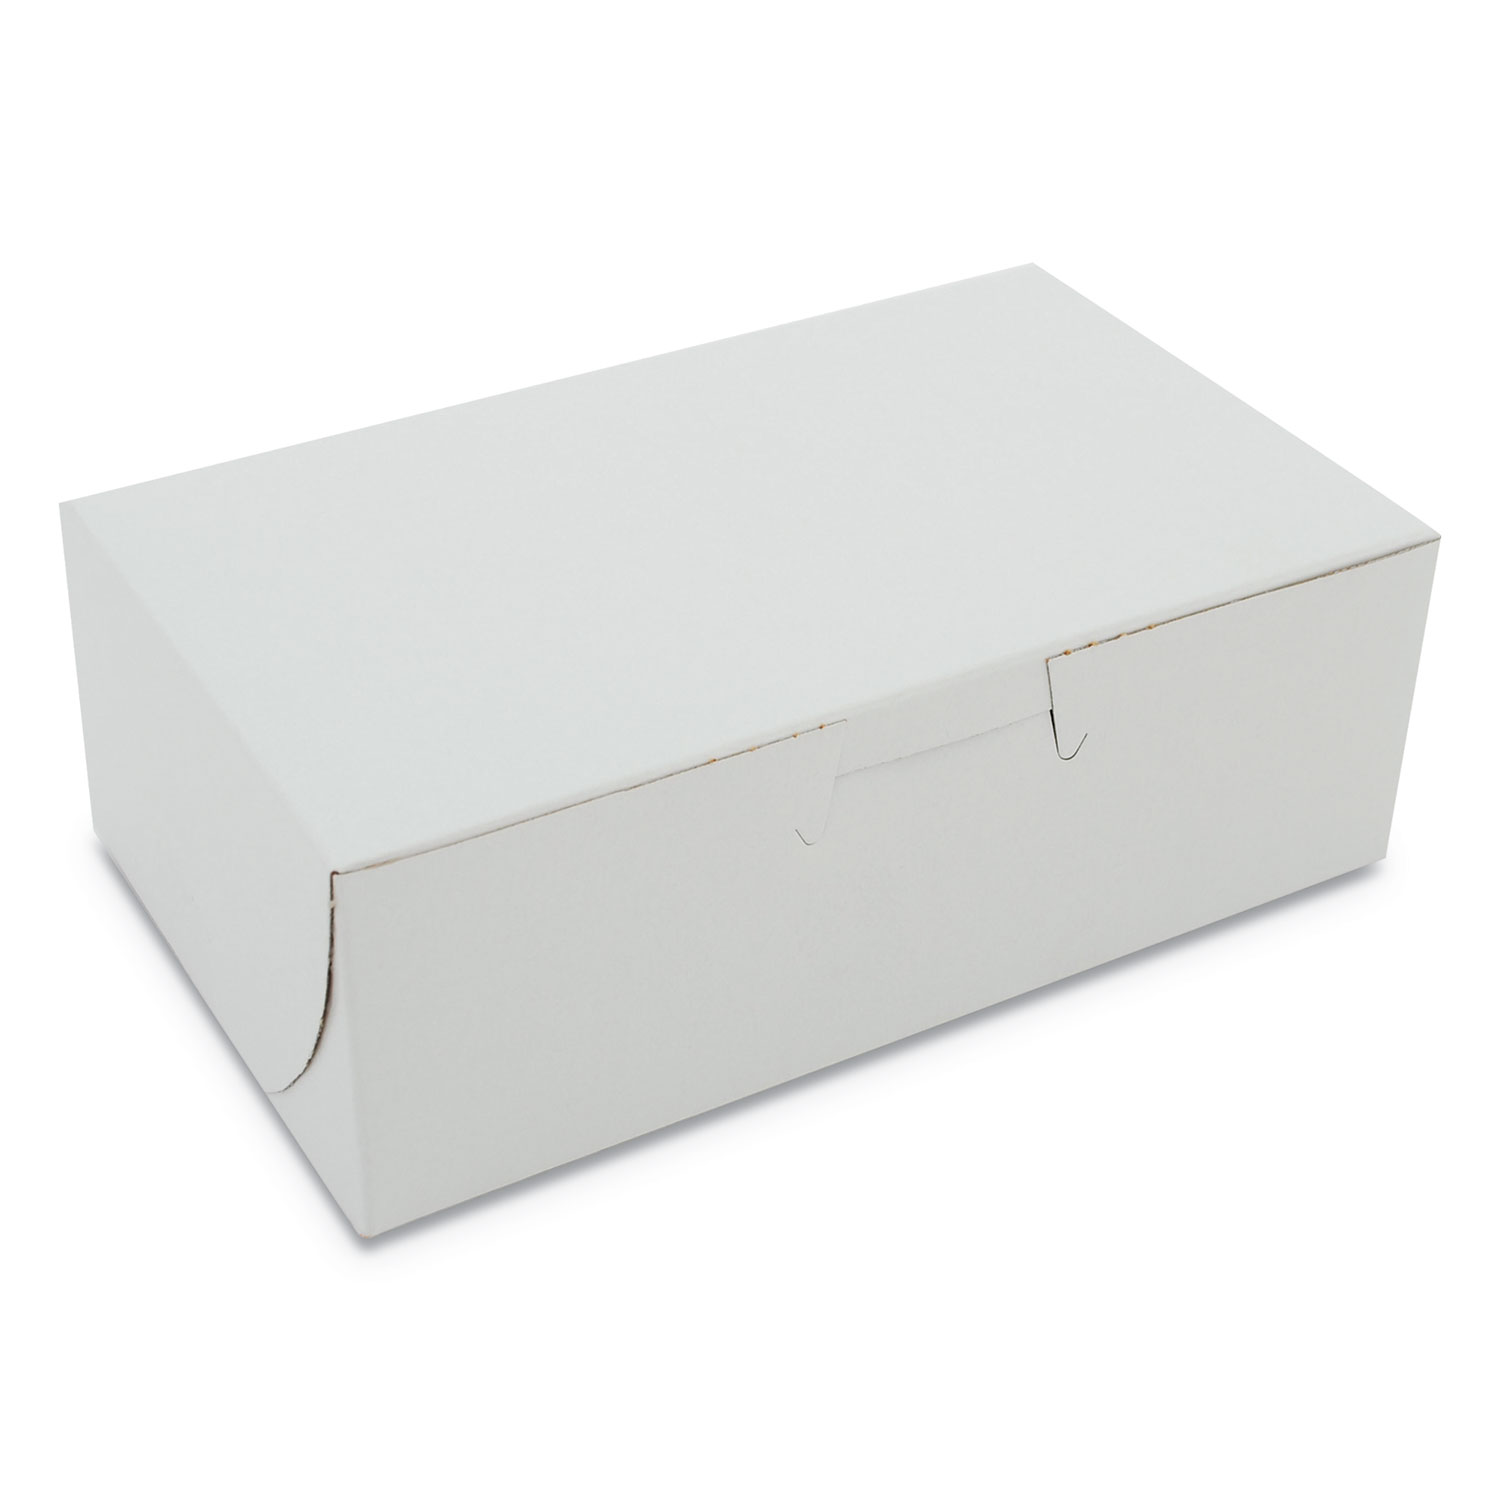 Bakery Boxes, 6 1/4w x 3 3/4d x 2 1/8h, White, 250 per Bundle